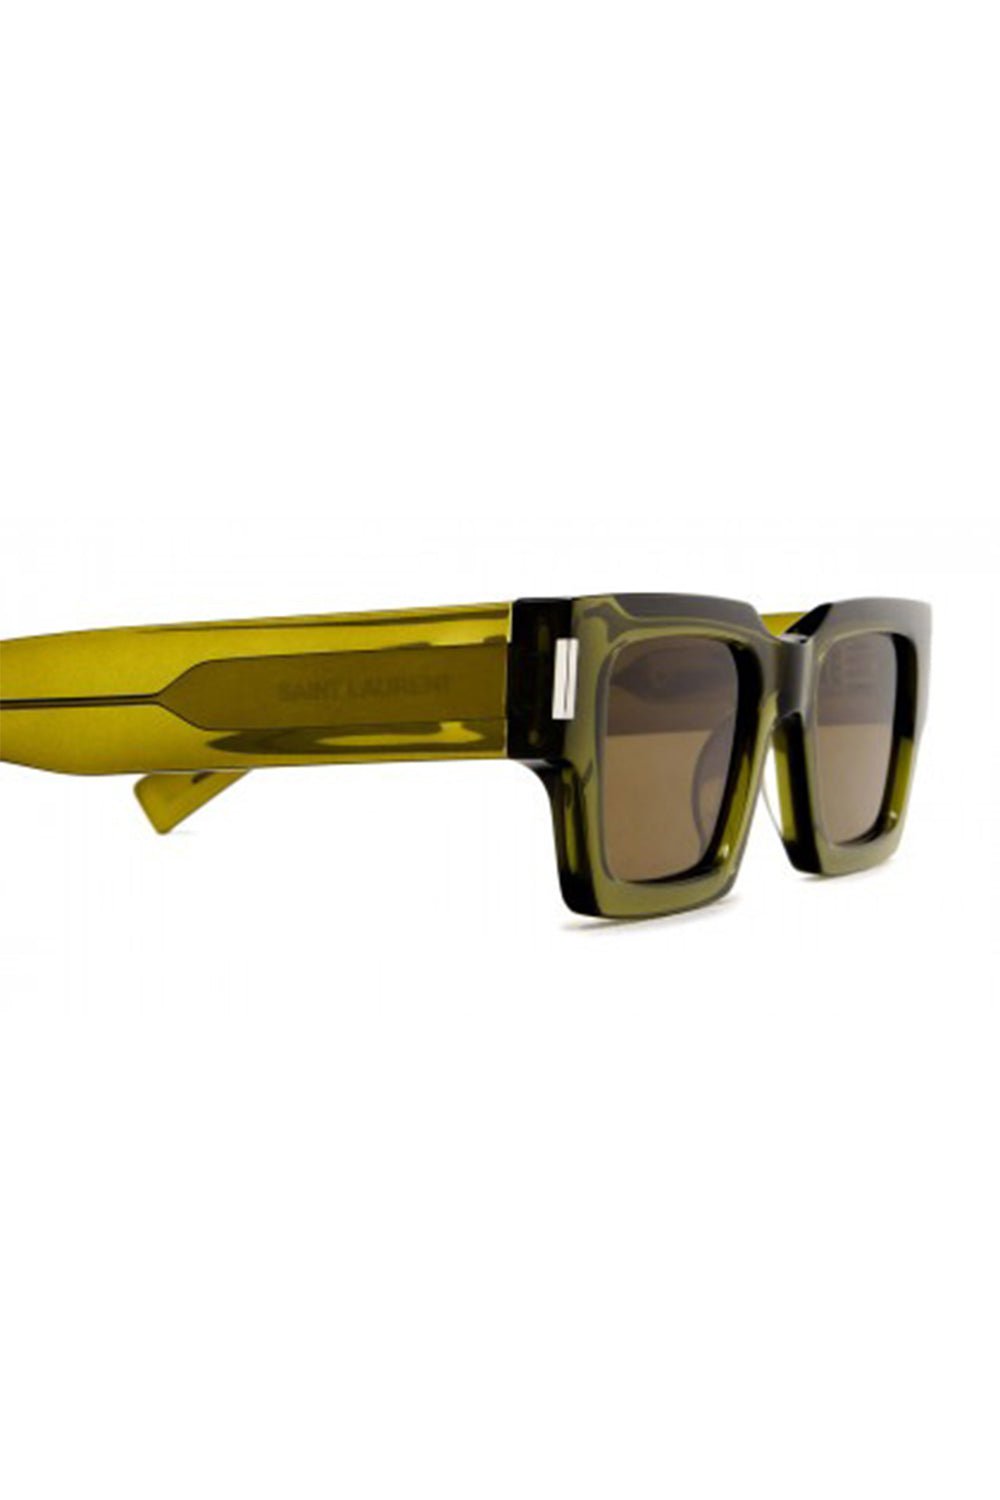 SL 572 Square Sunglasses in Multicoloured - Saint Laurent